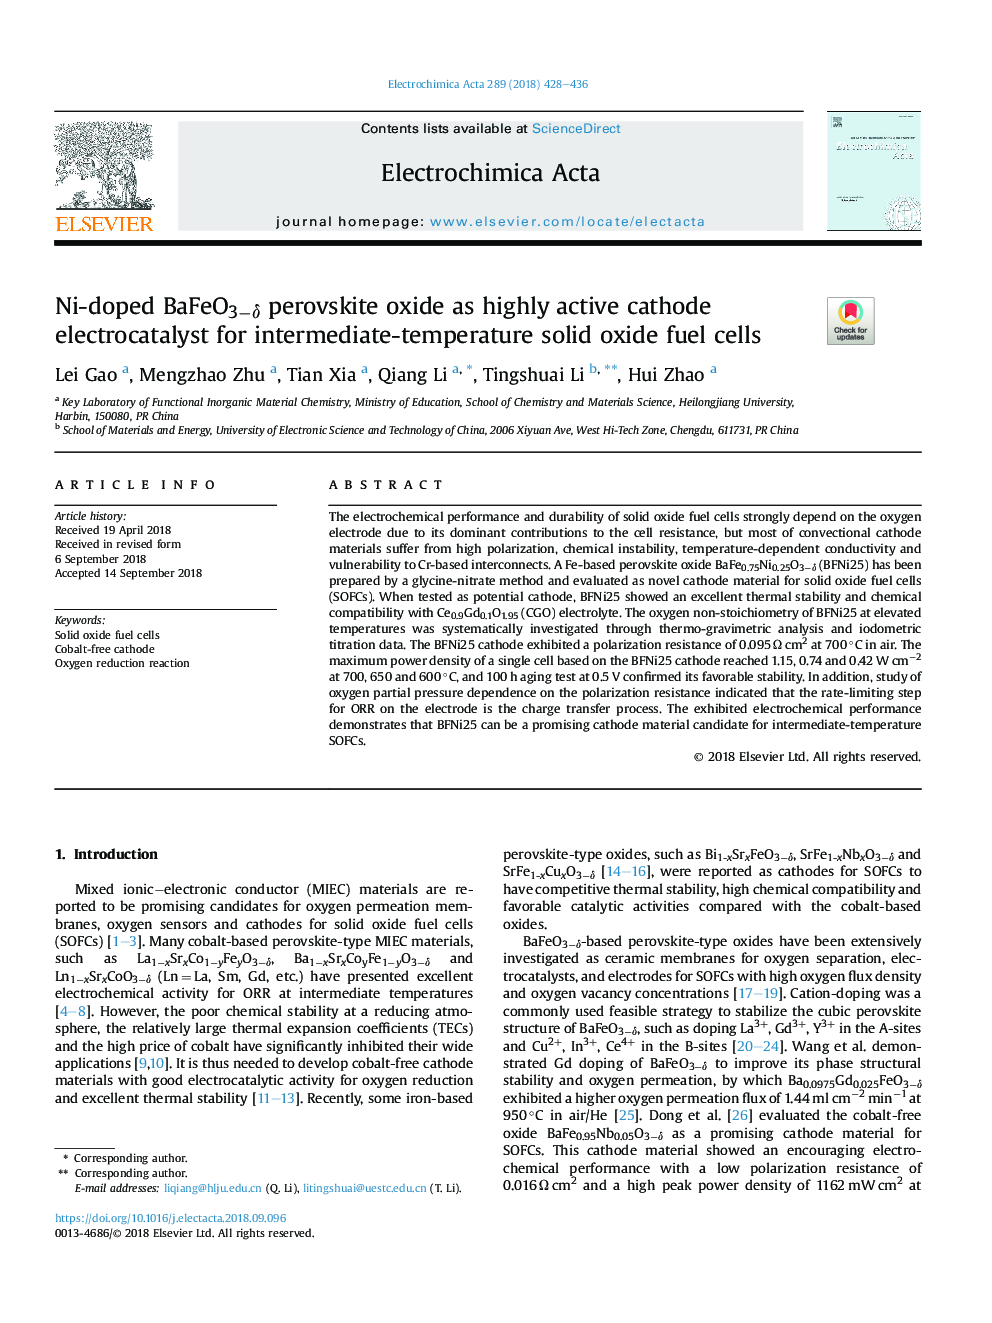 Ni-doped BaFeO3âÎ´ perovskite oxide as highly active cathode electrocatalyst for intermediate-temperature solid oxide fuel cells